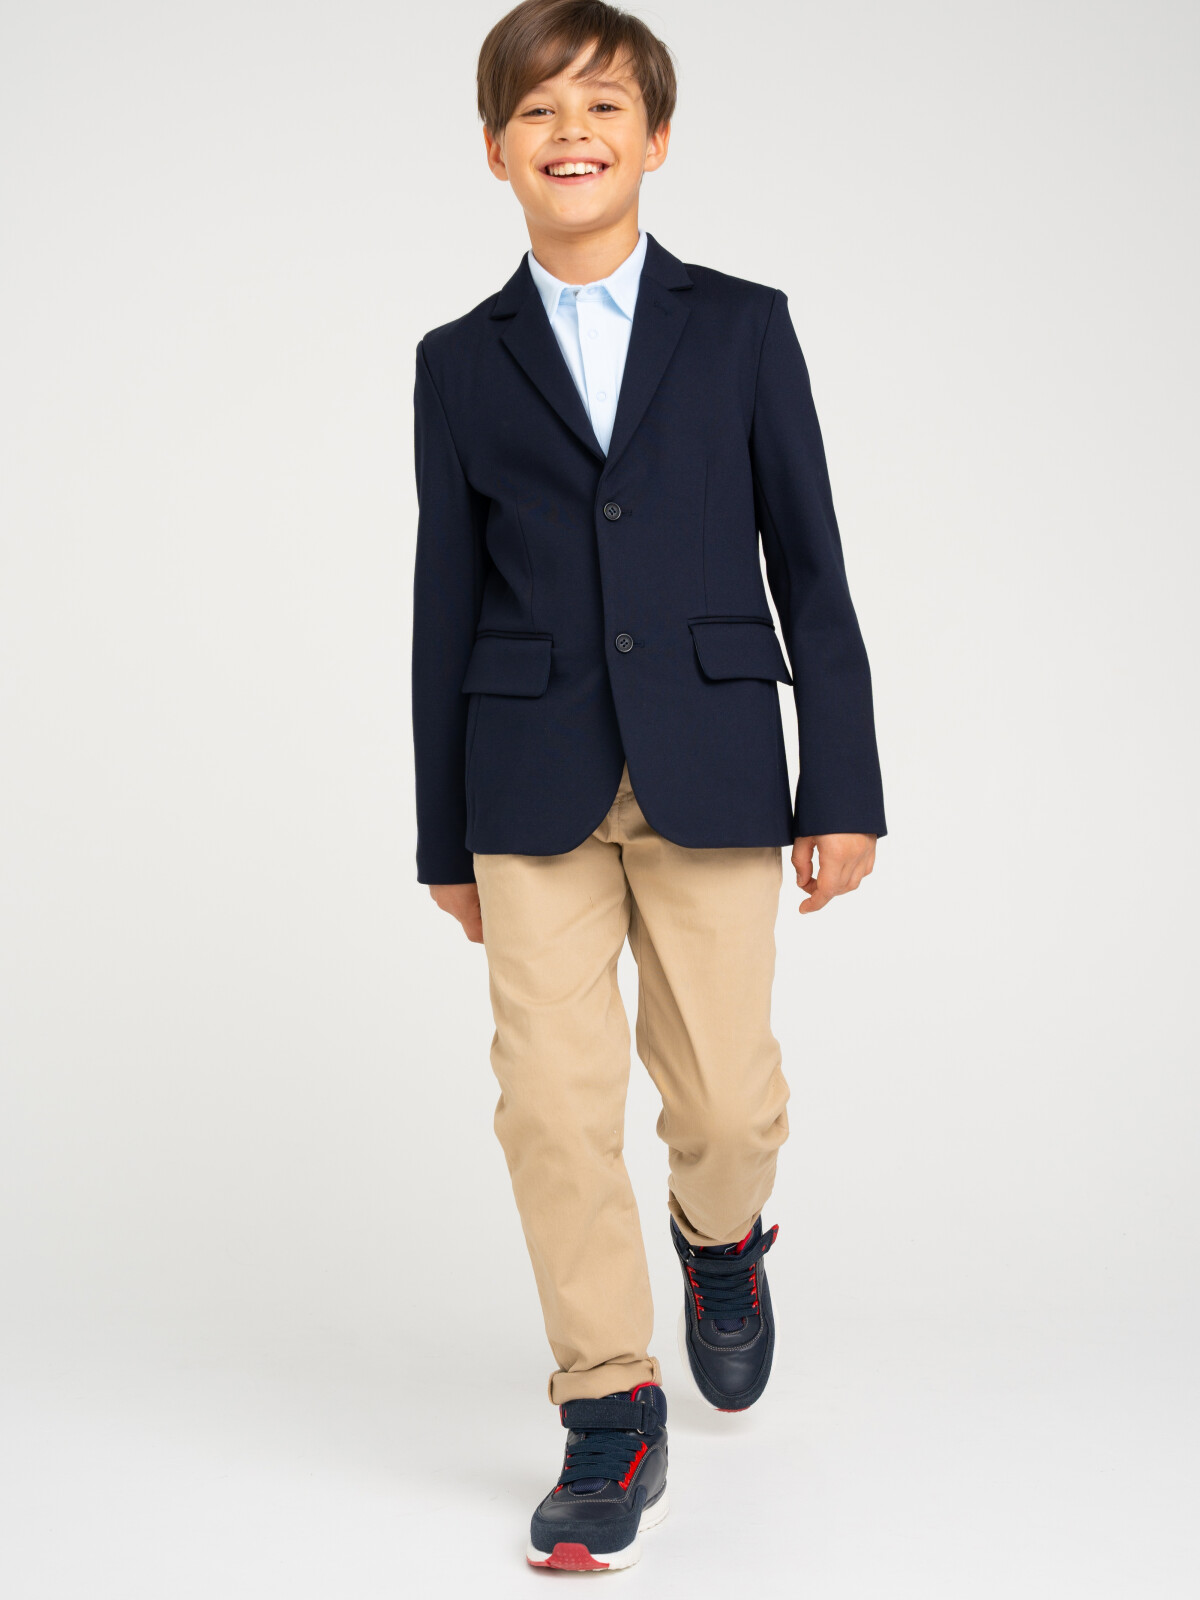 Пиджак трикотажный для мальчика PlayToday, тёмно-синий, 158